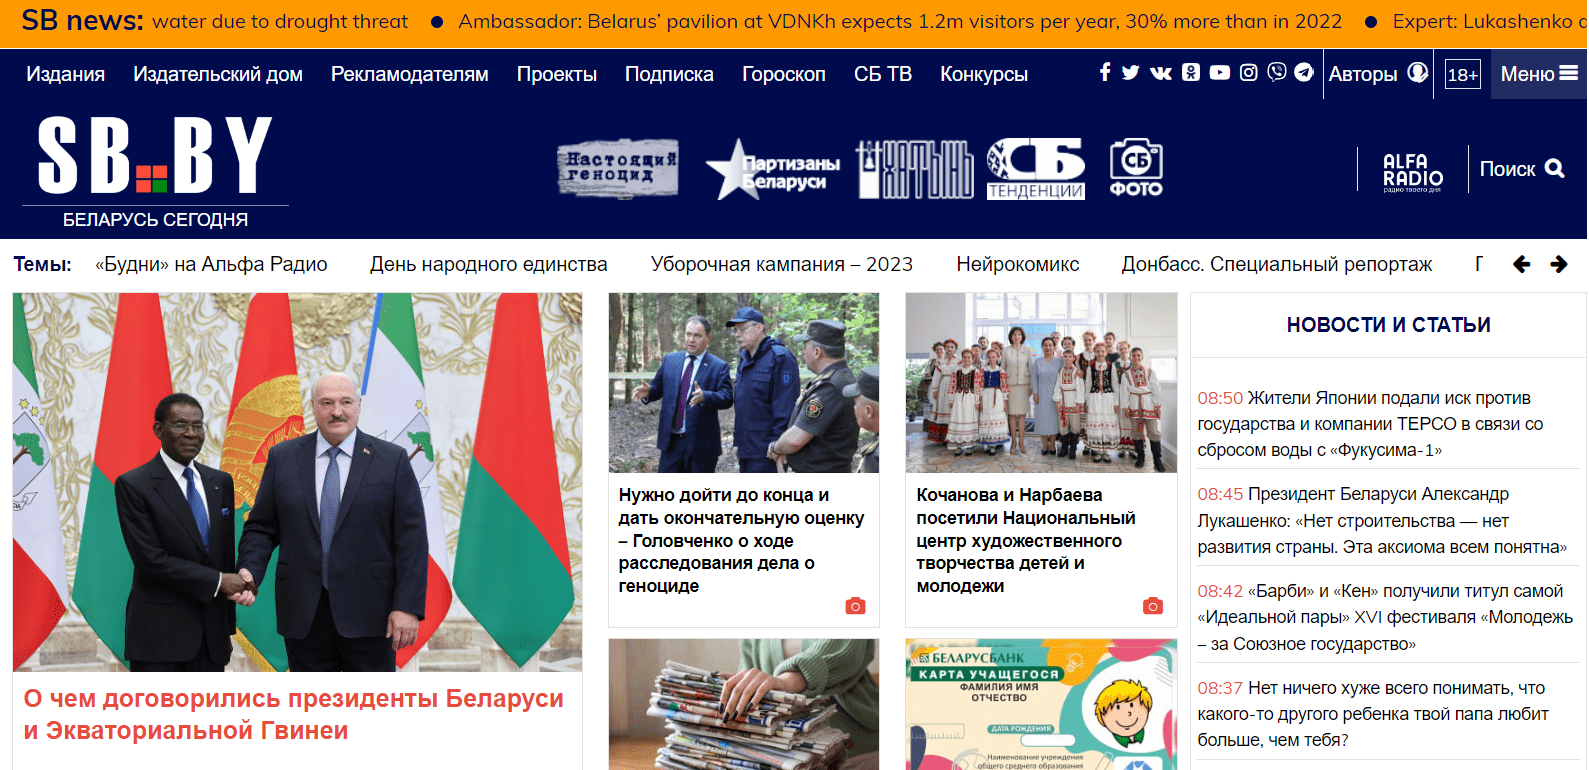 Беларускія навіны (sb.by) - официальный сайт